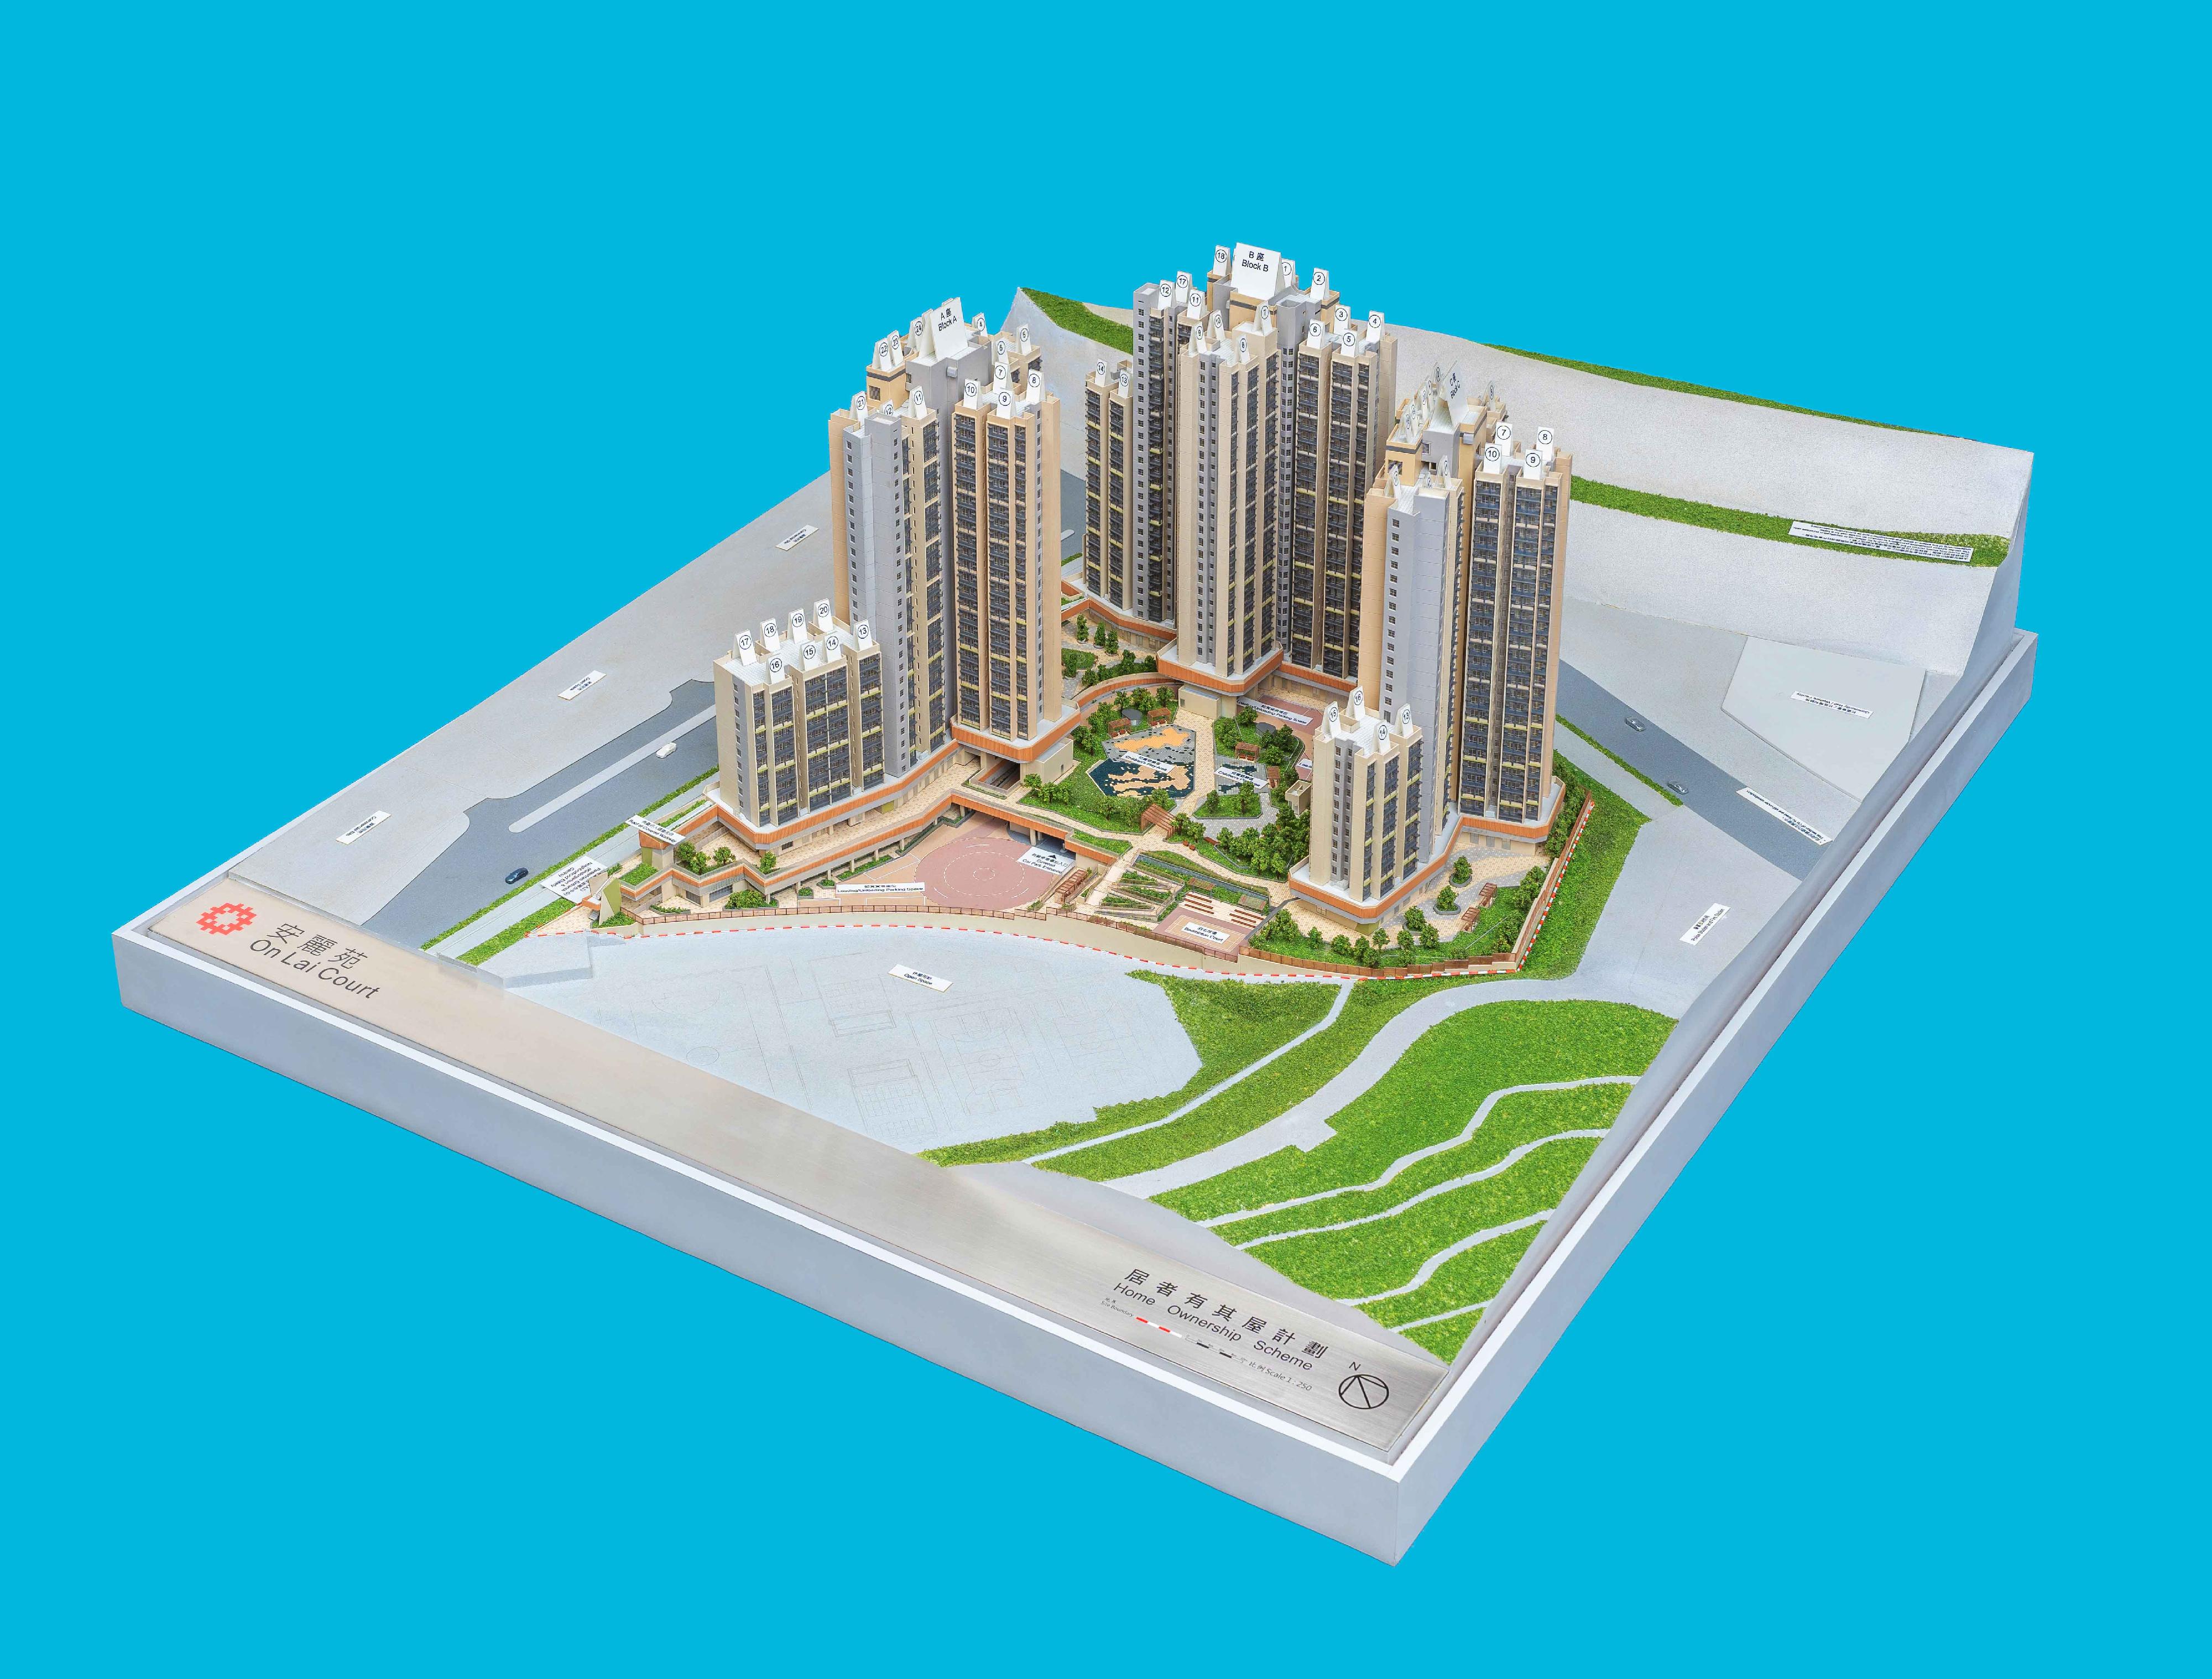 「出售居者有其屋計劃單位2023」七月三十一日開始接受購買申請。圖示該計劃的新發展項目安麗苑的模型。

